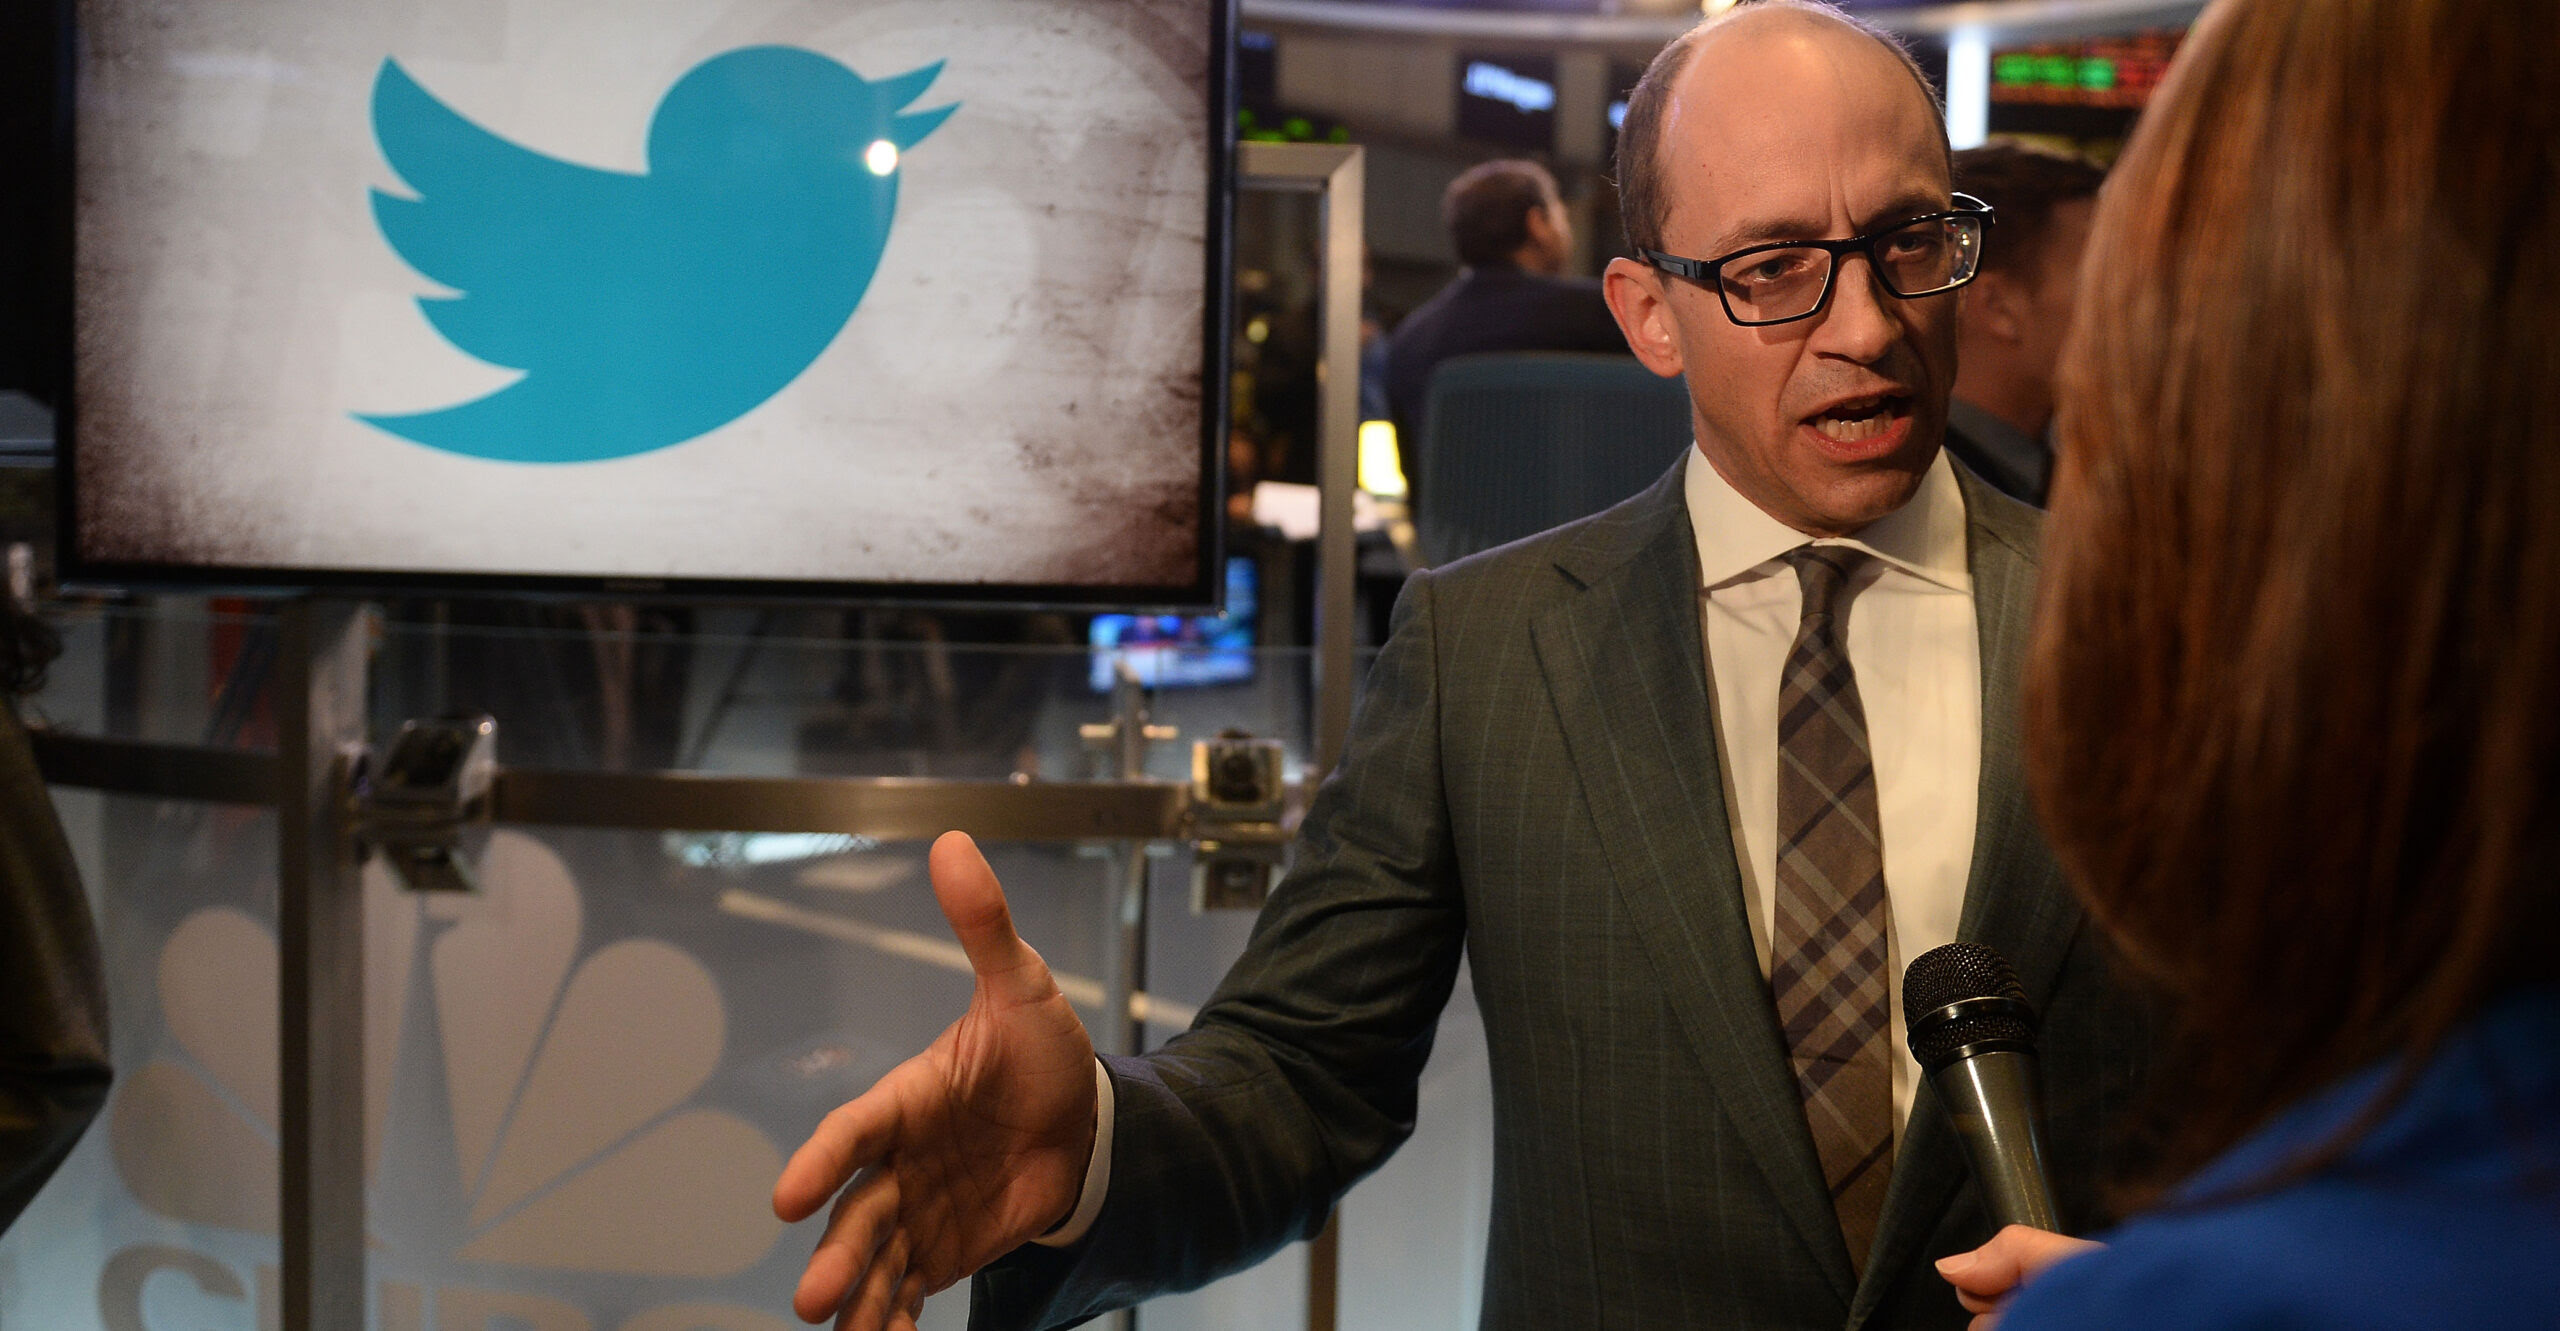 Why Won’t Twitter Delete Woke Ex-CEO’s Pro-Violence Tweet?